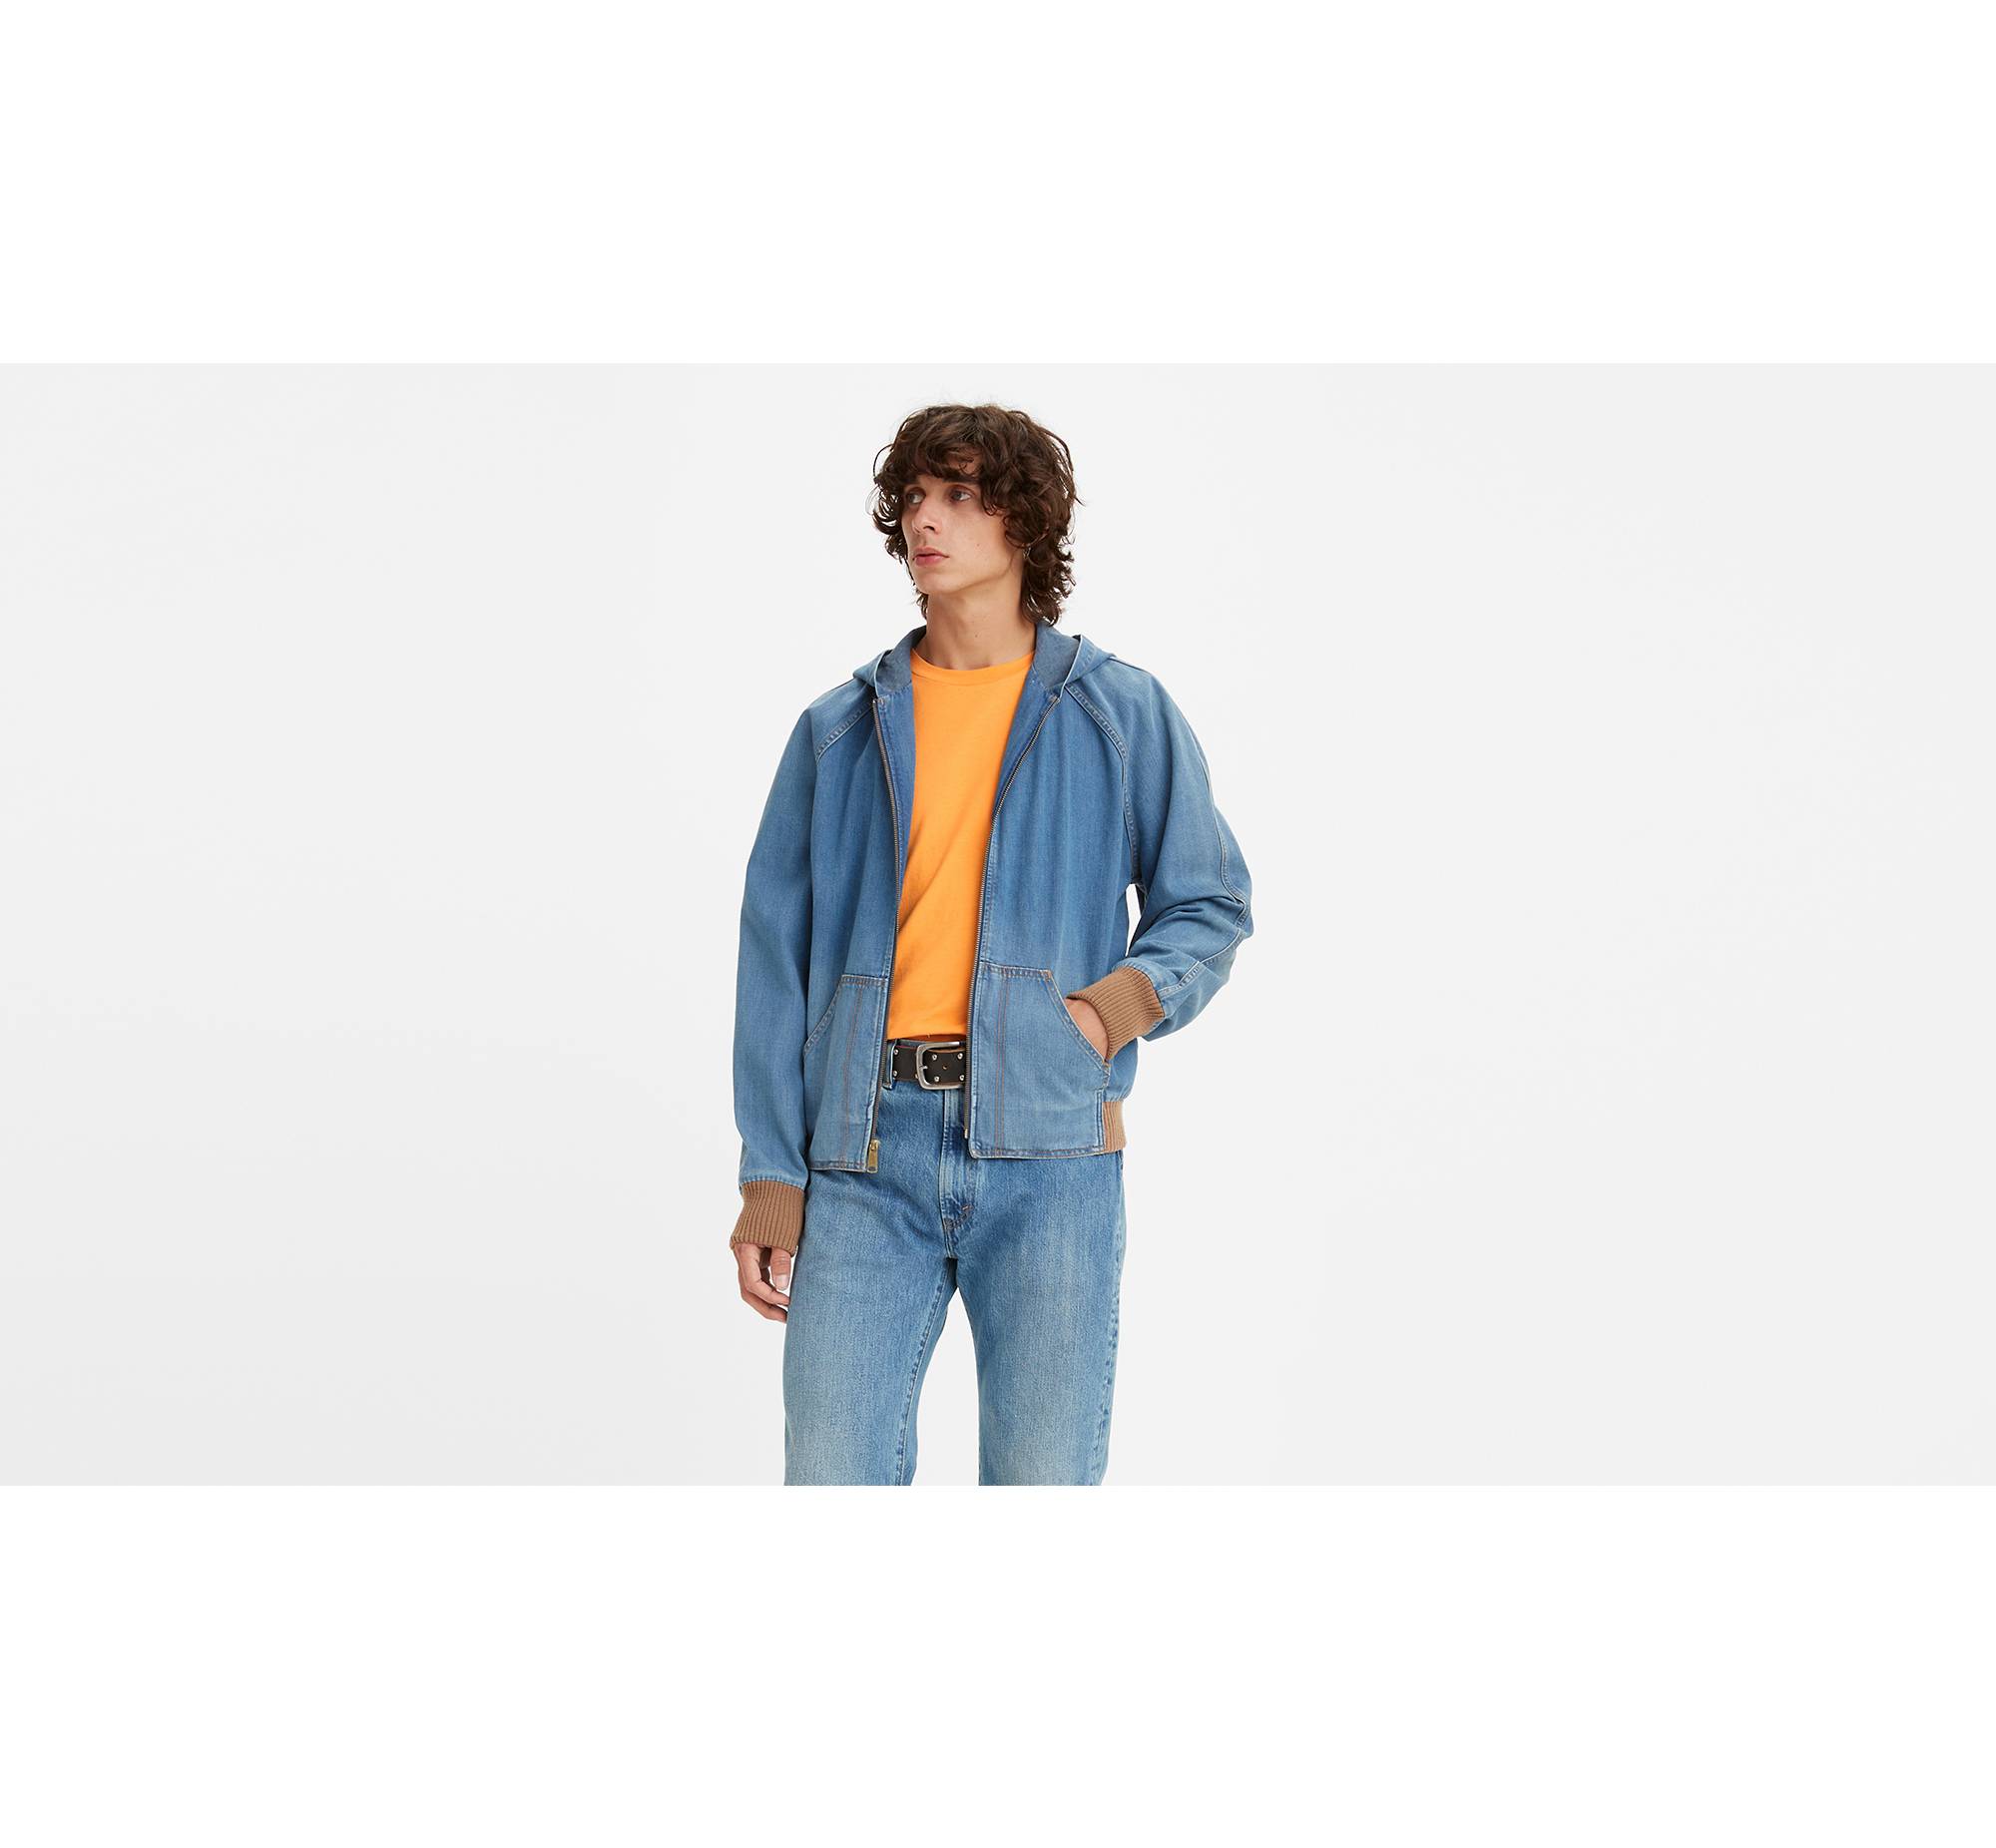 Levis Vintage Clothing Orange TAB Tab Hooded Jacket #levis #lvc # levisvintageclothing #リーバイス #1970s#orangetab…